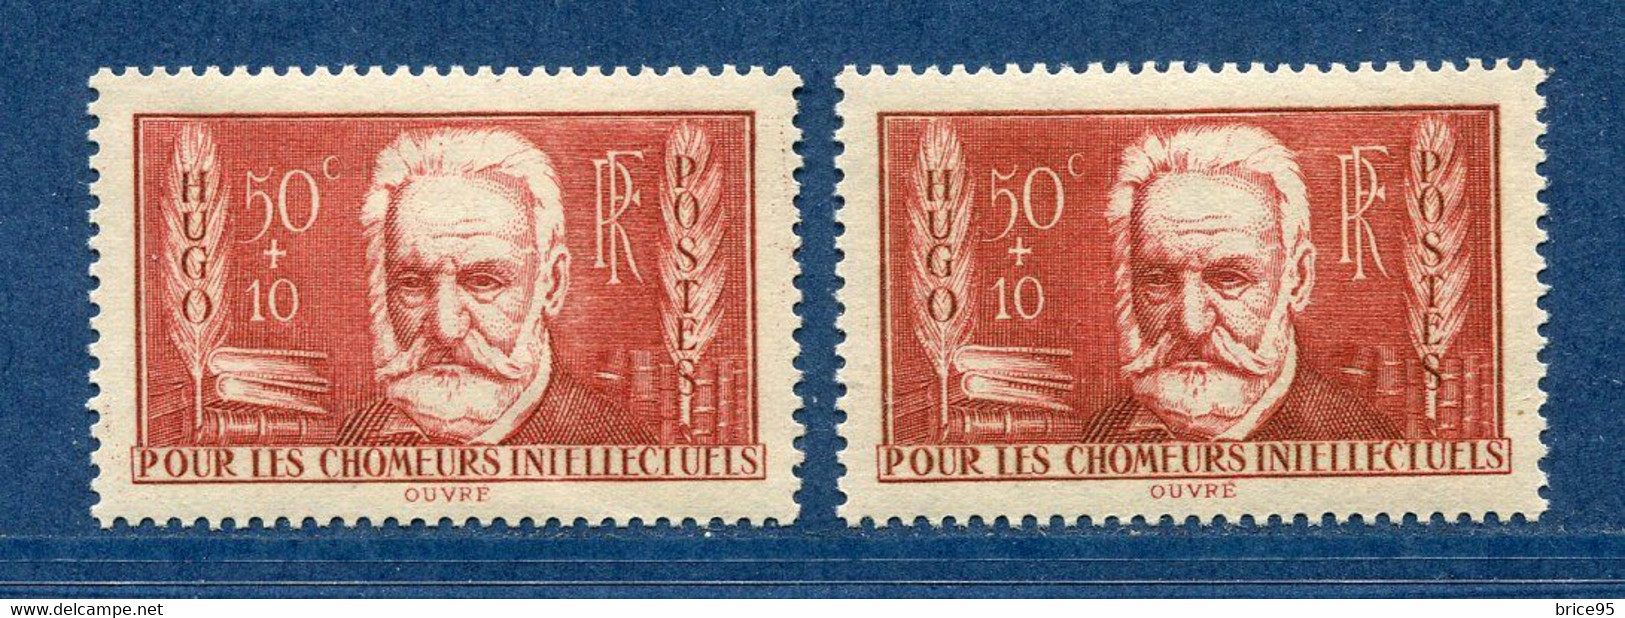 ⭐ France - Variété - YT N° 332 - Couleurs - Papier Jaunatre - Neuf Sans Charnière - 1936 ⭐ - Unused Stamps